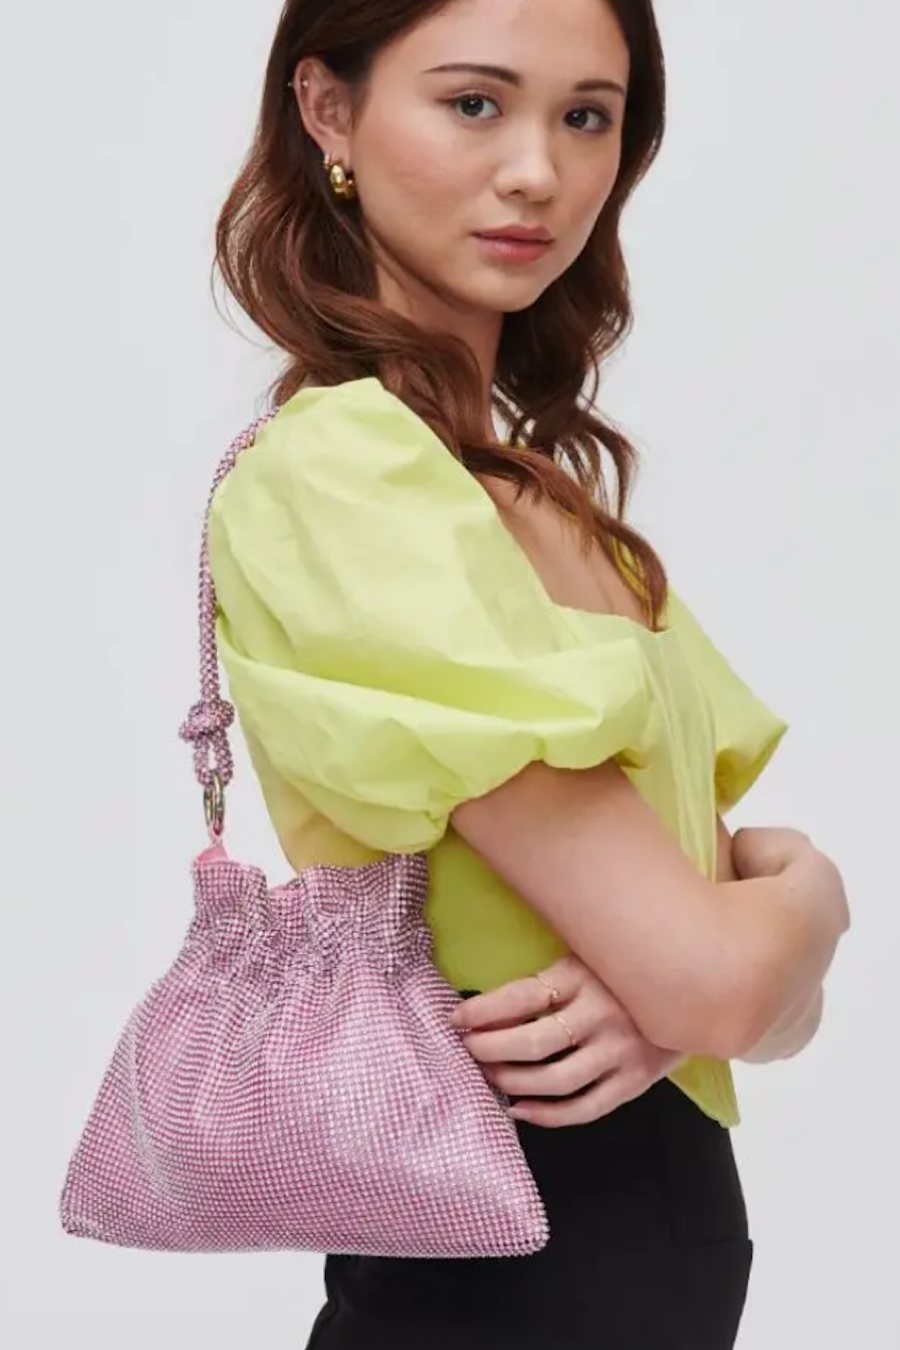 Larissa Sequin Evening Bag Pink